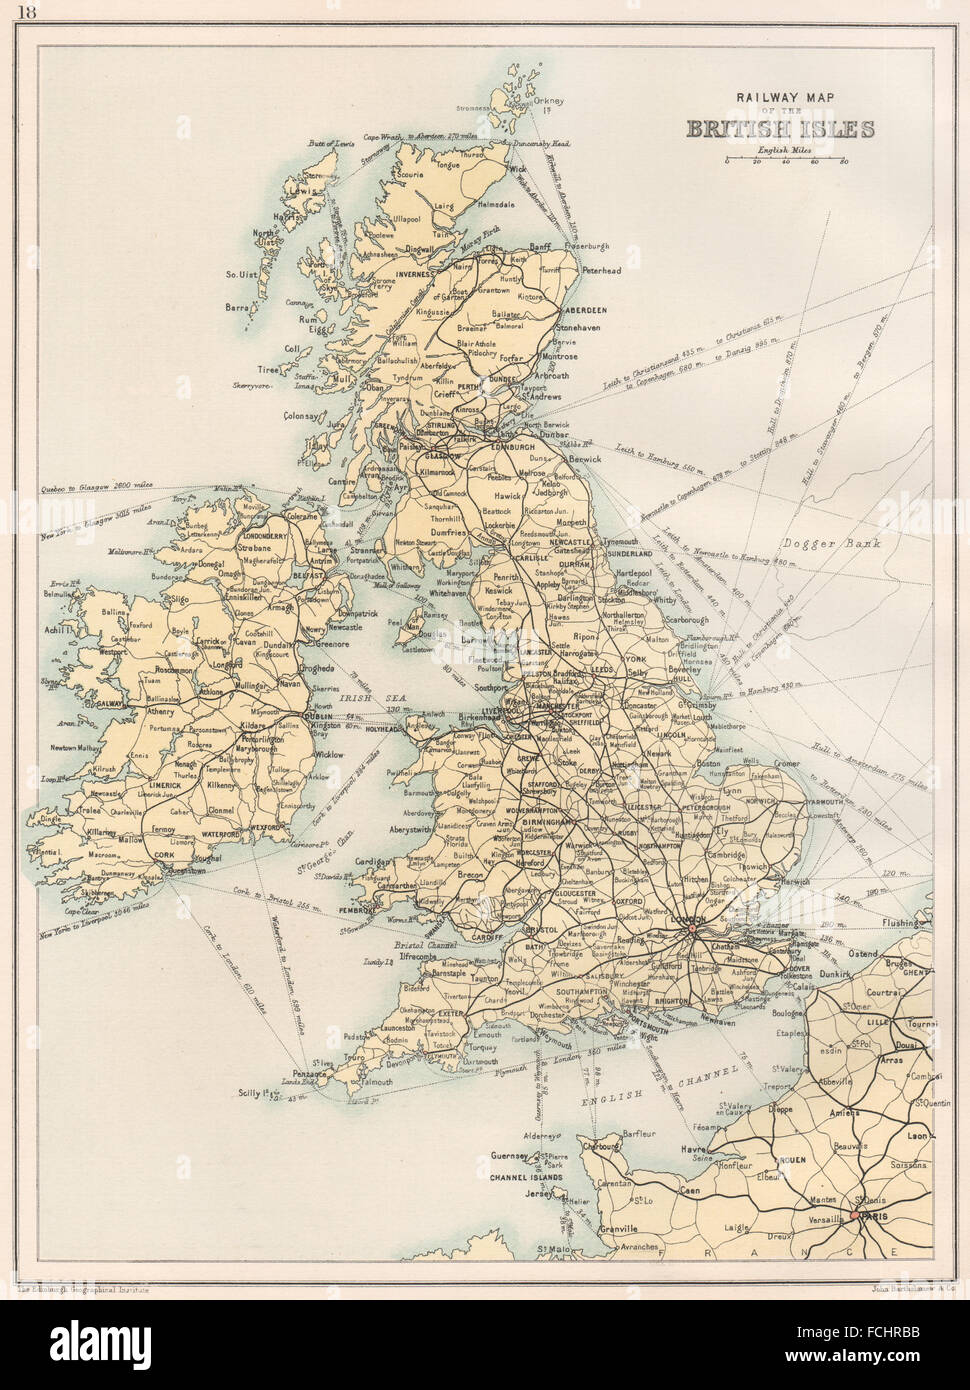 Îles britanniques : carte des chemins de fer. Angleterre Ecosse Irlande et Pays de Galles. BARTHOLOMEW 1891 Banque D'Images